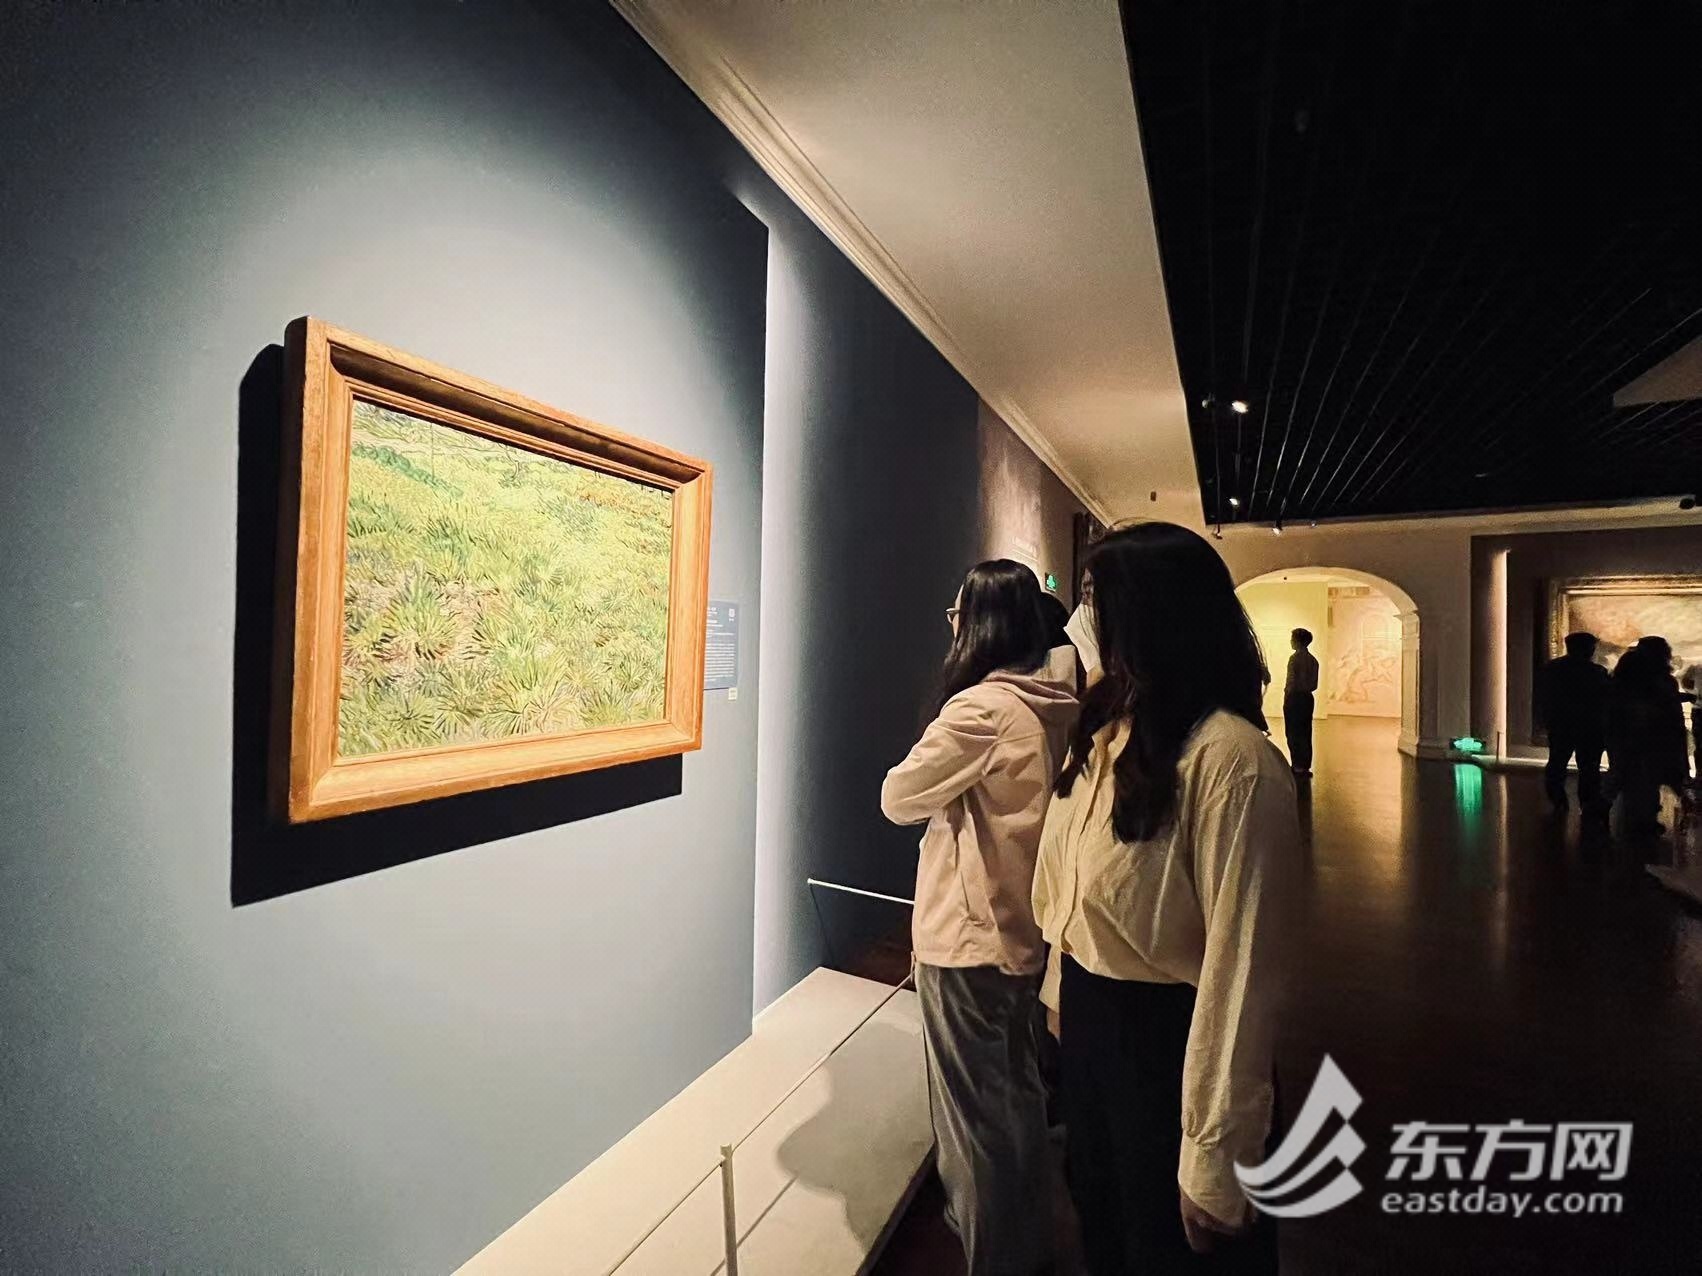 【文化旅游】上海博物馆现象级大展“从波提切利到梵高”收官